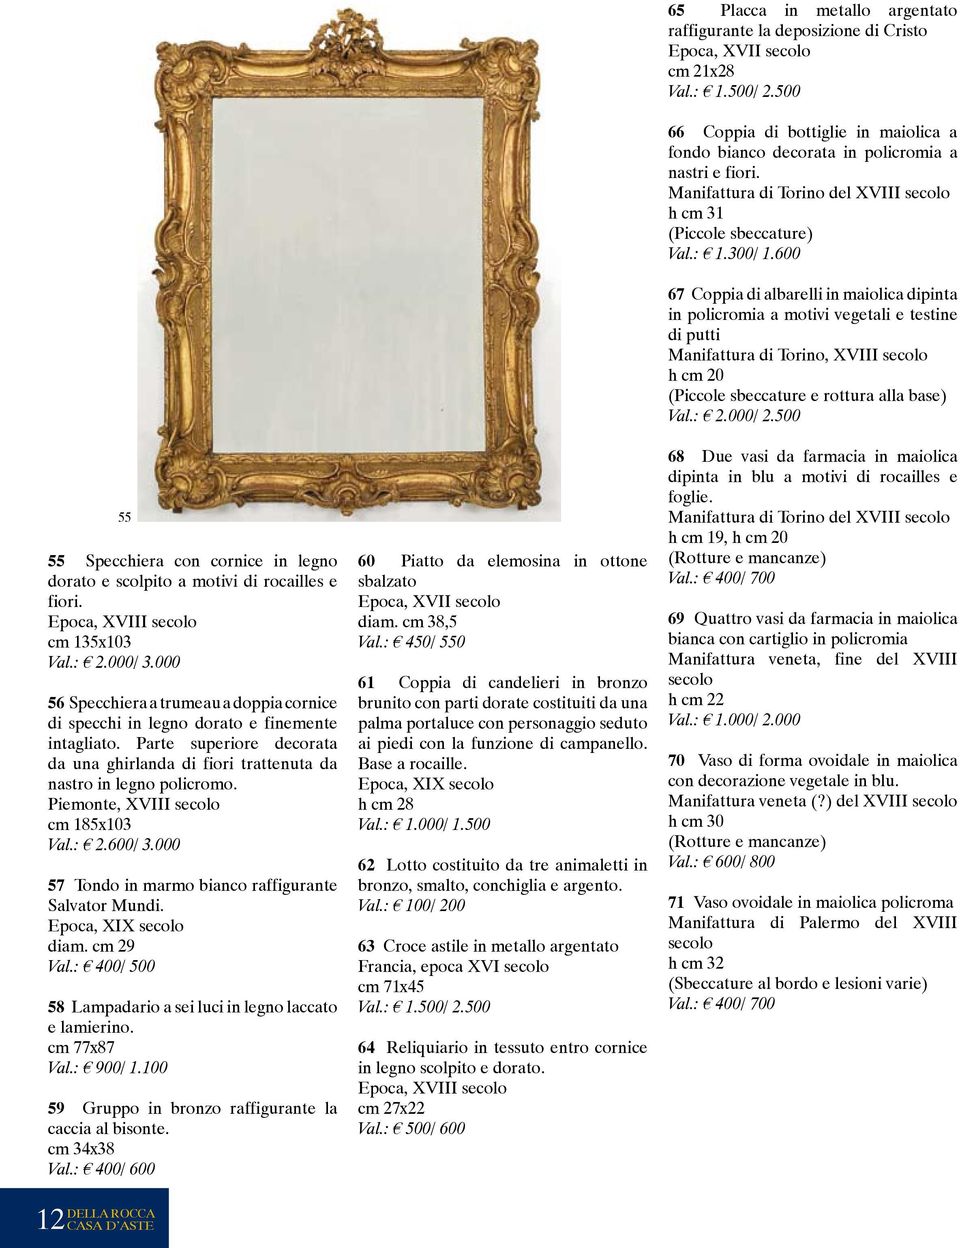 Piemonte, XVIII secolo cm 185x103 Val.: 2.600/ 3.000 57 Tondo in marmo bianco raffigurante Salvator Mundi. diam. cm 29 Val.: 400/ 500 58 Lampadario a sei luci in legno laccato e lamierino.